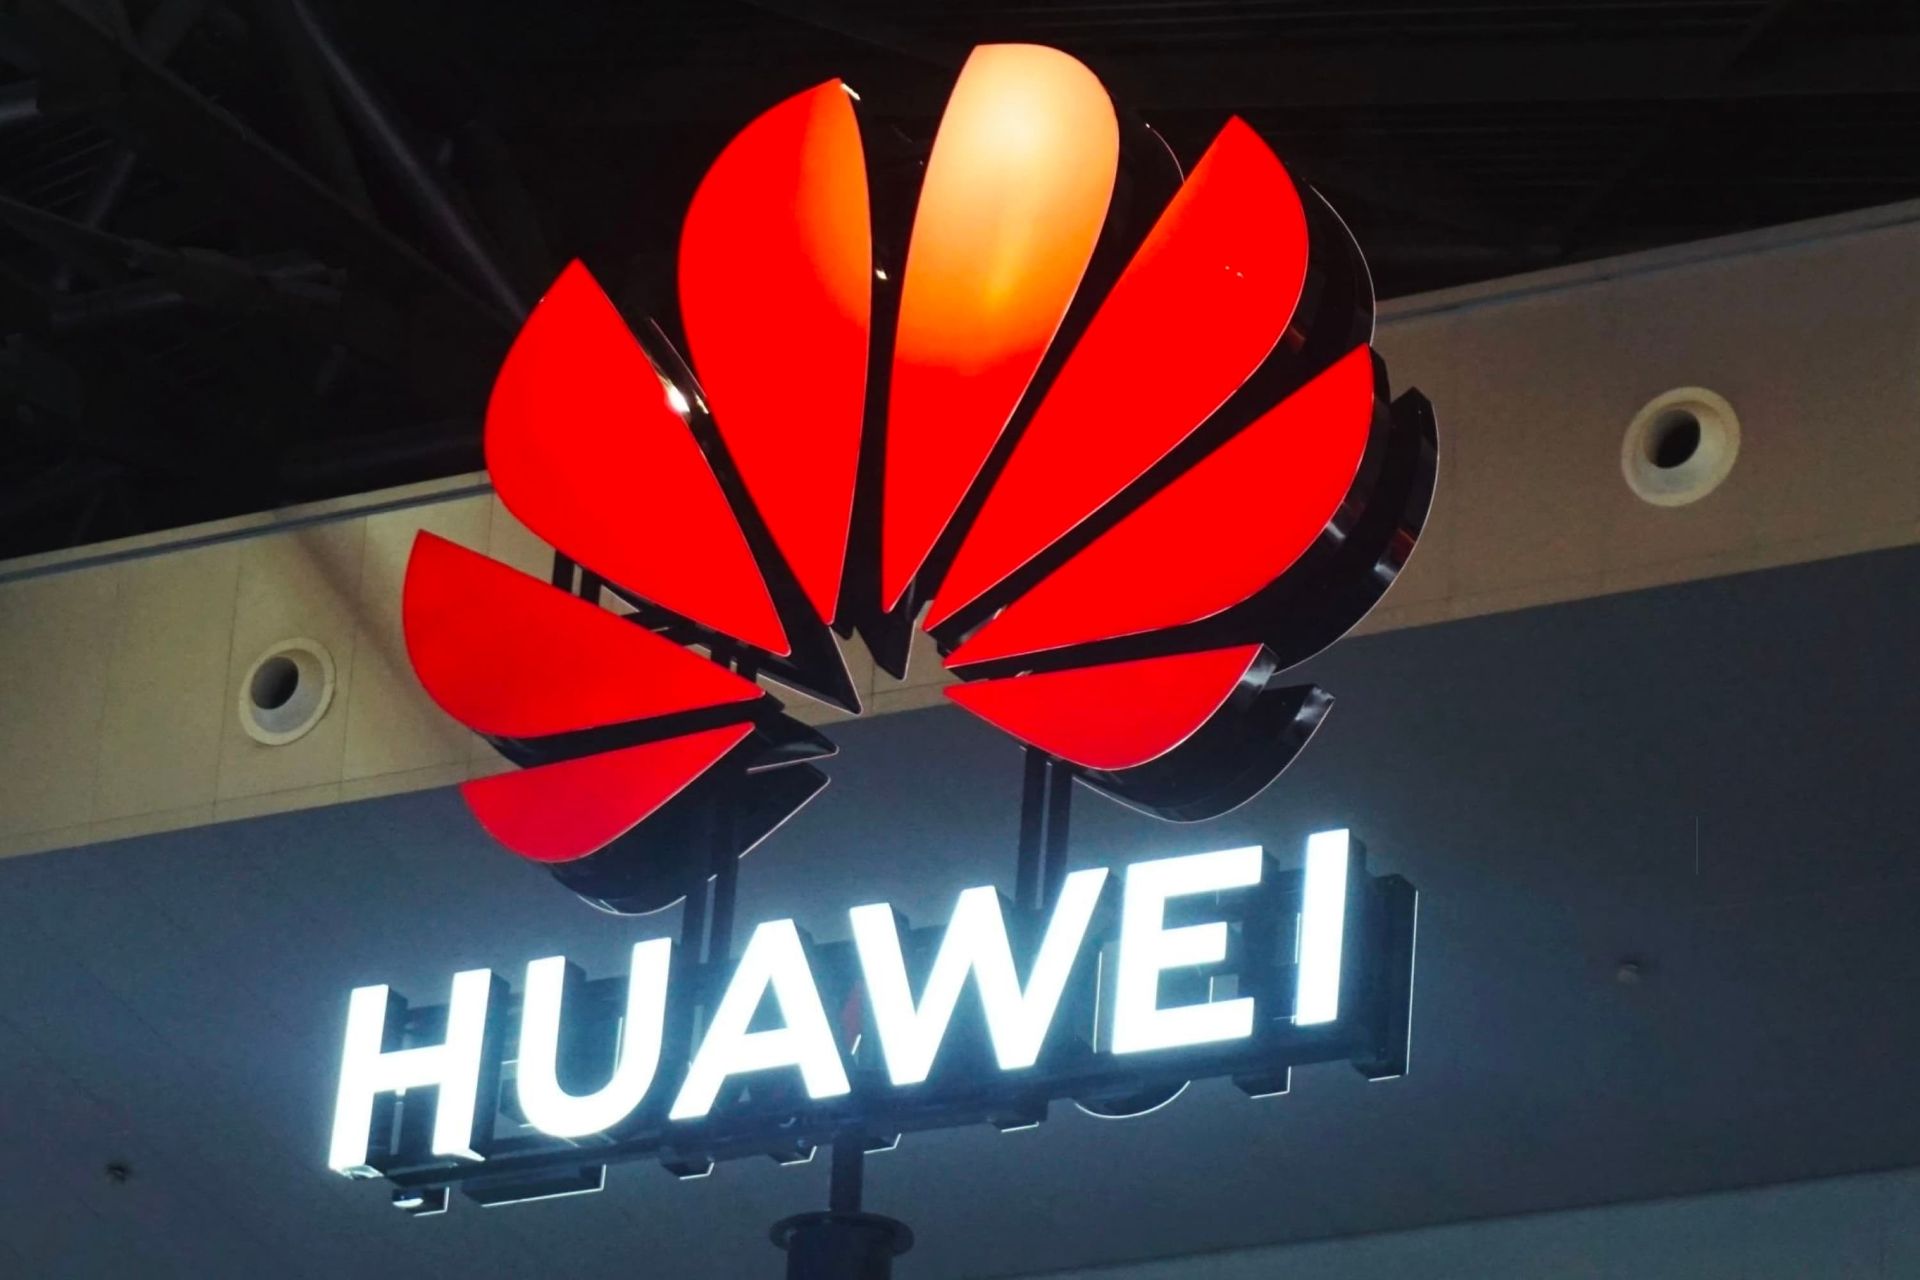 لوگو هواوی / Huawei قرمز و سفید در داخل سالن